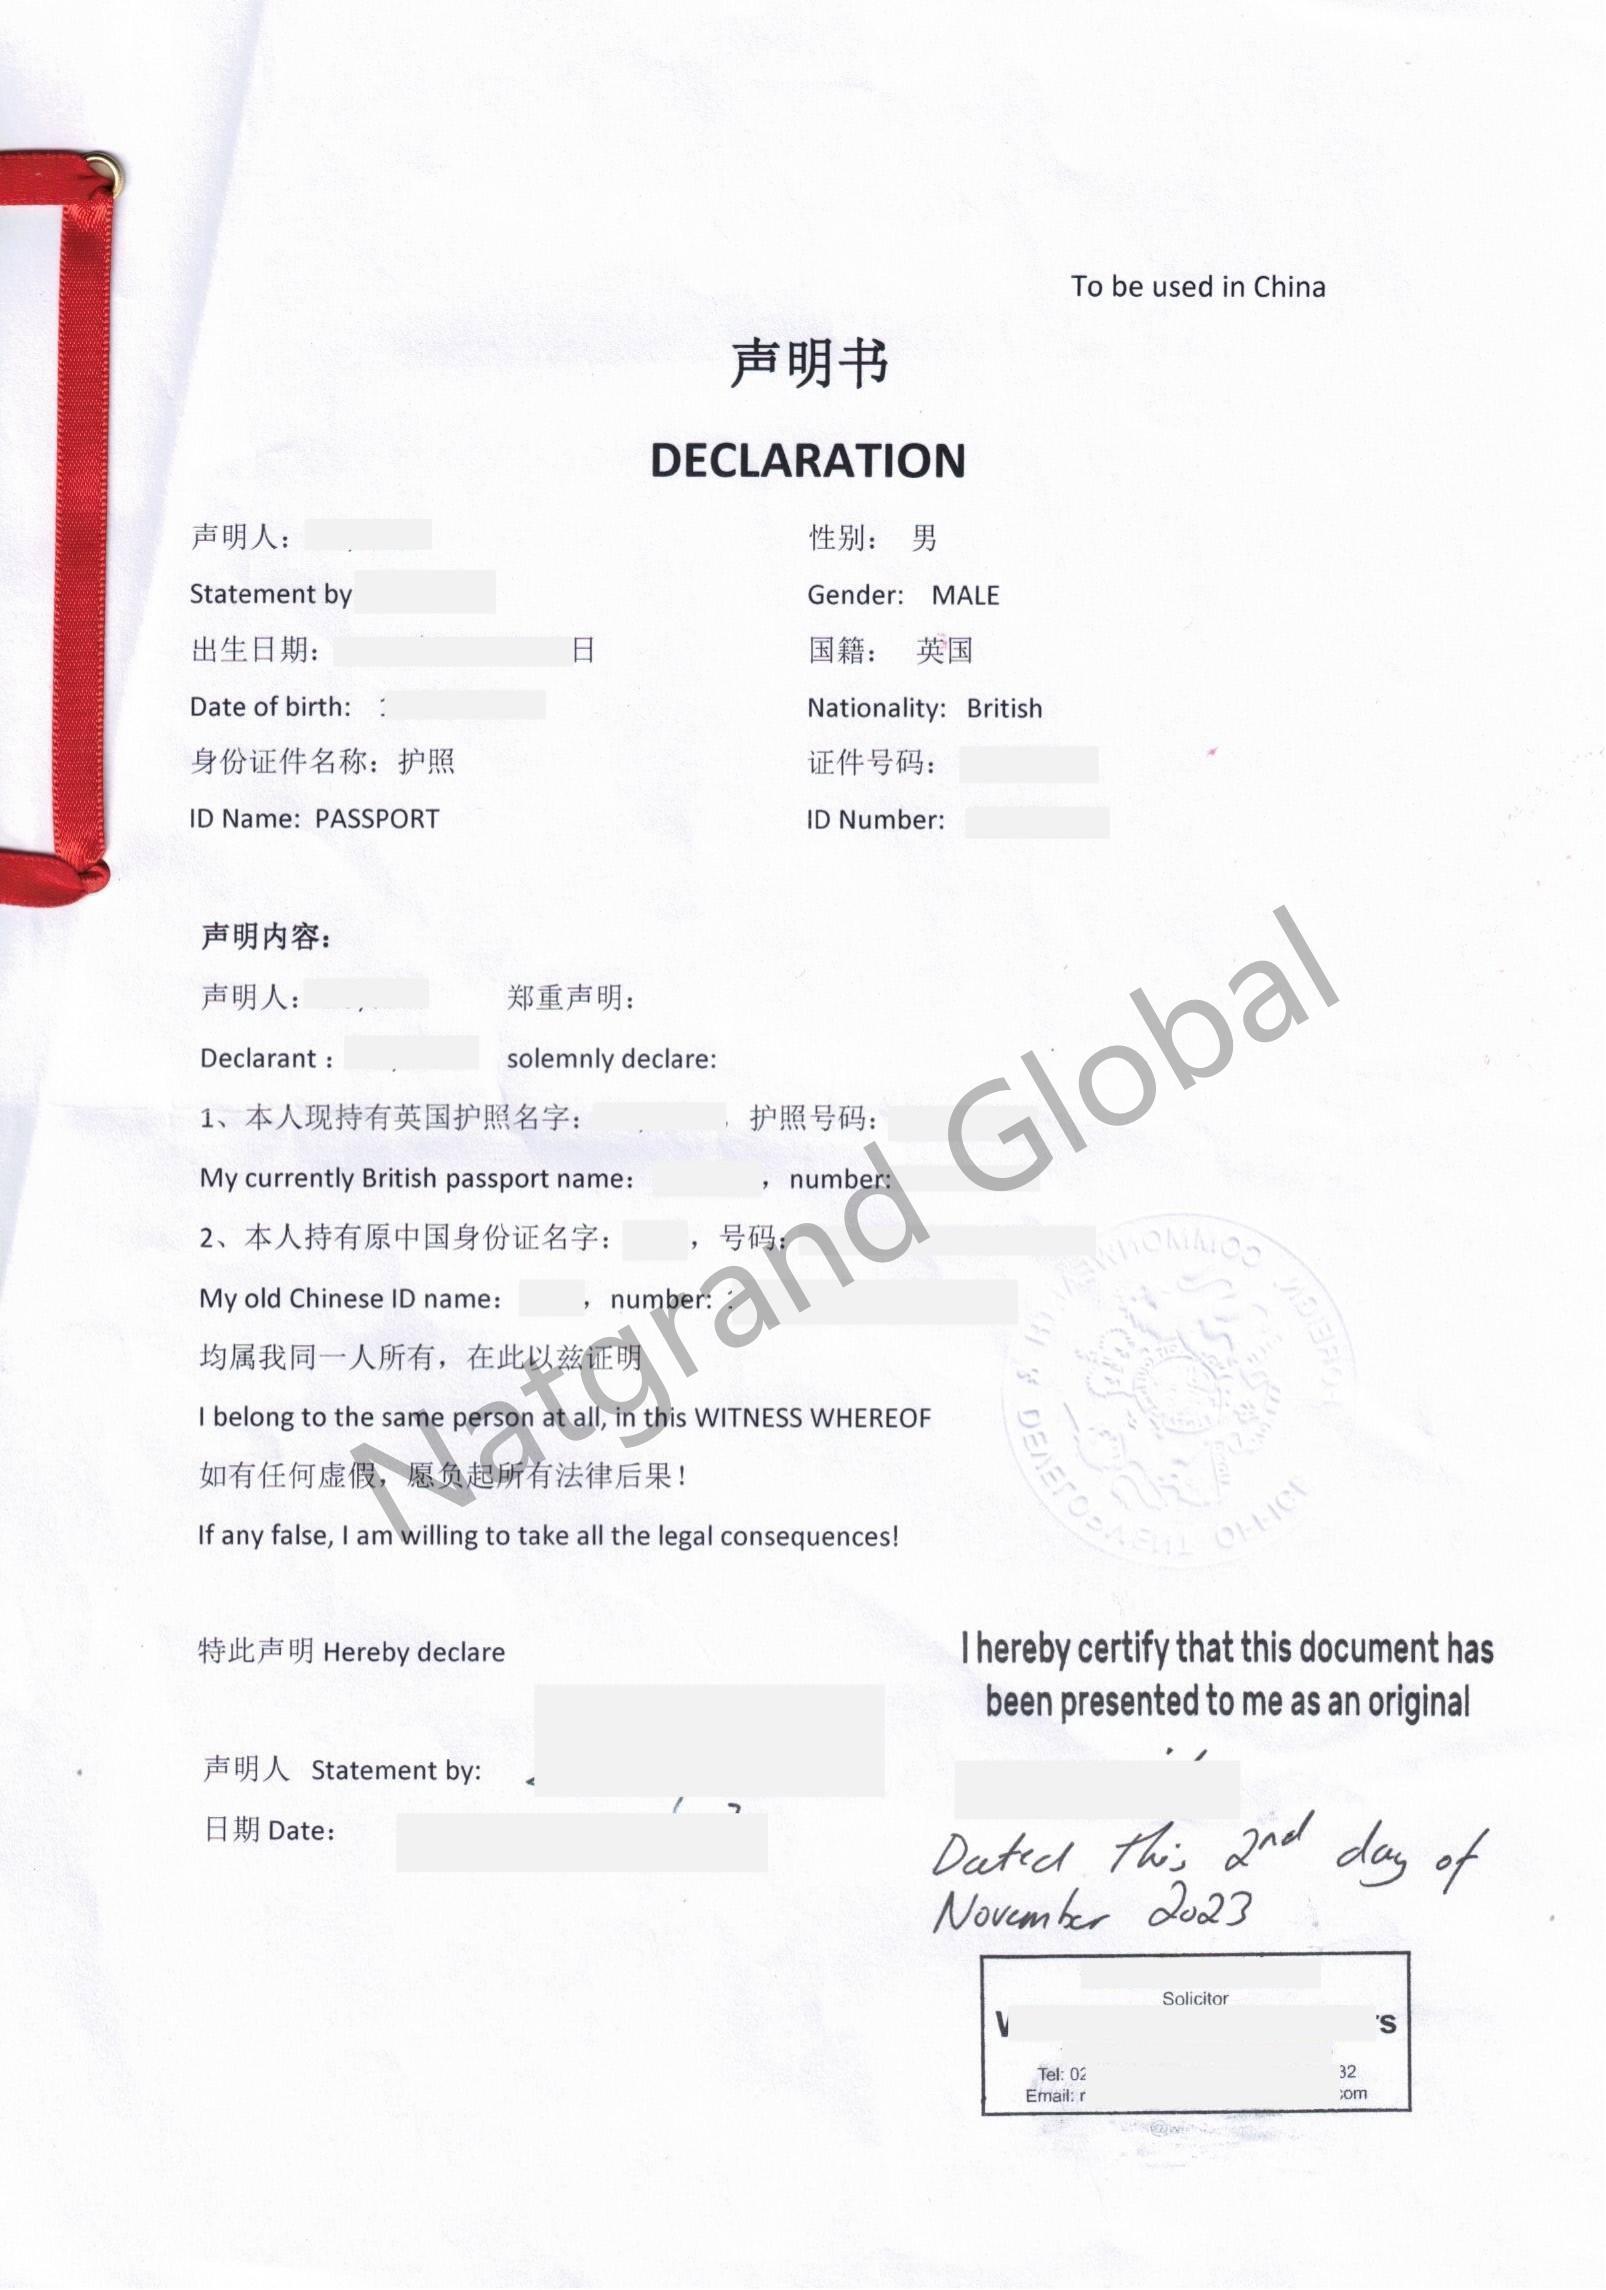 英国籍华人证明两个身份信息为同一人海牙认证